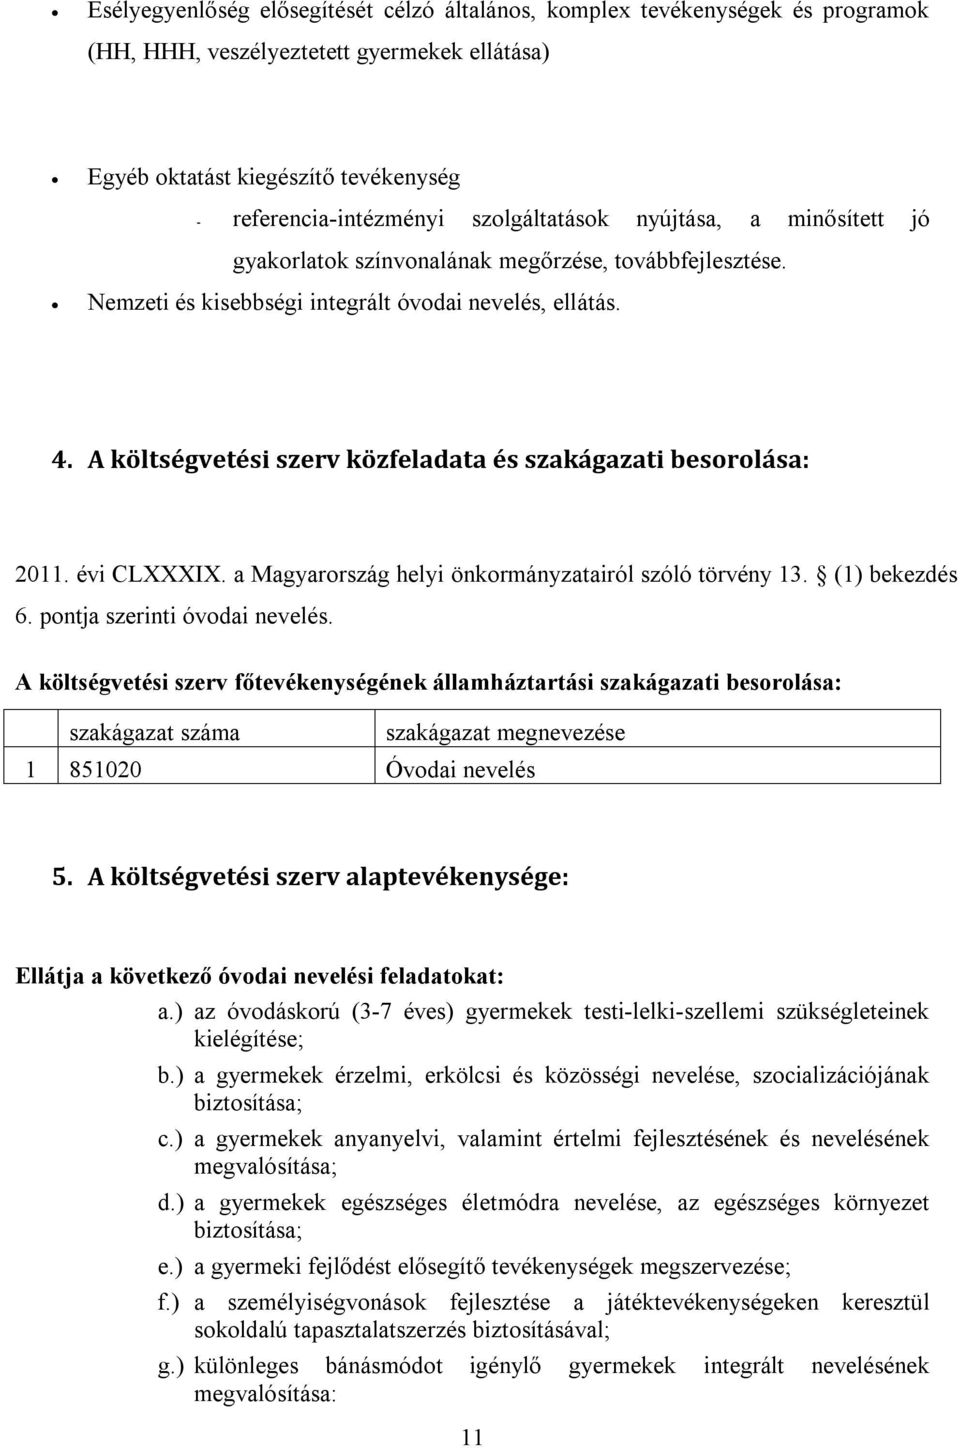 A költségvetési szerv közfeladata és szakágazati besorolása: 2011. évi CLXXXIX. a Magyarország helyi önkormányzatairól szóló törvény 13. (1) bekezdés 6. pontja szerinti óvodai nevelés.